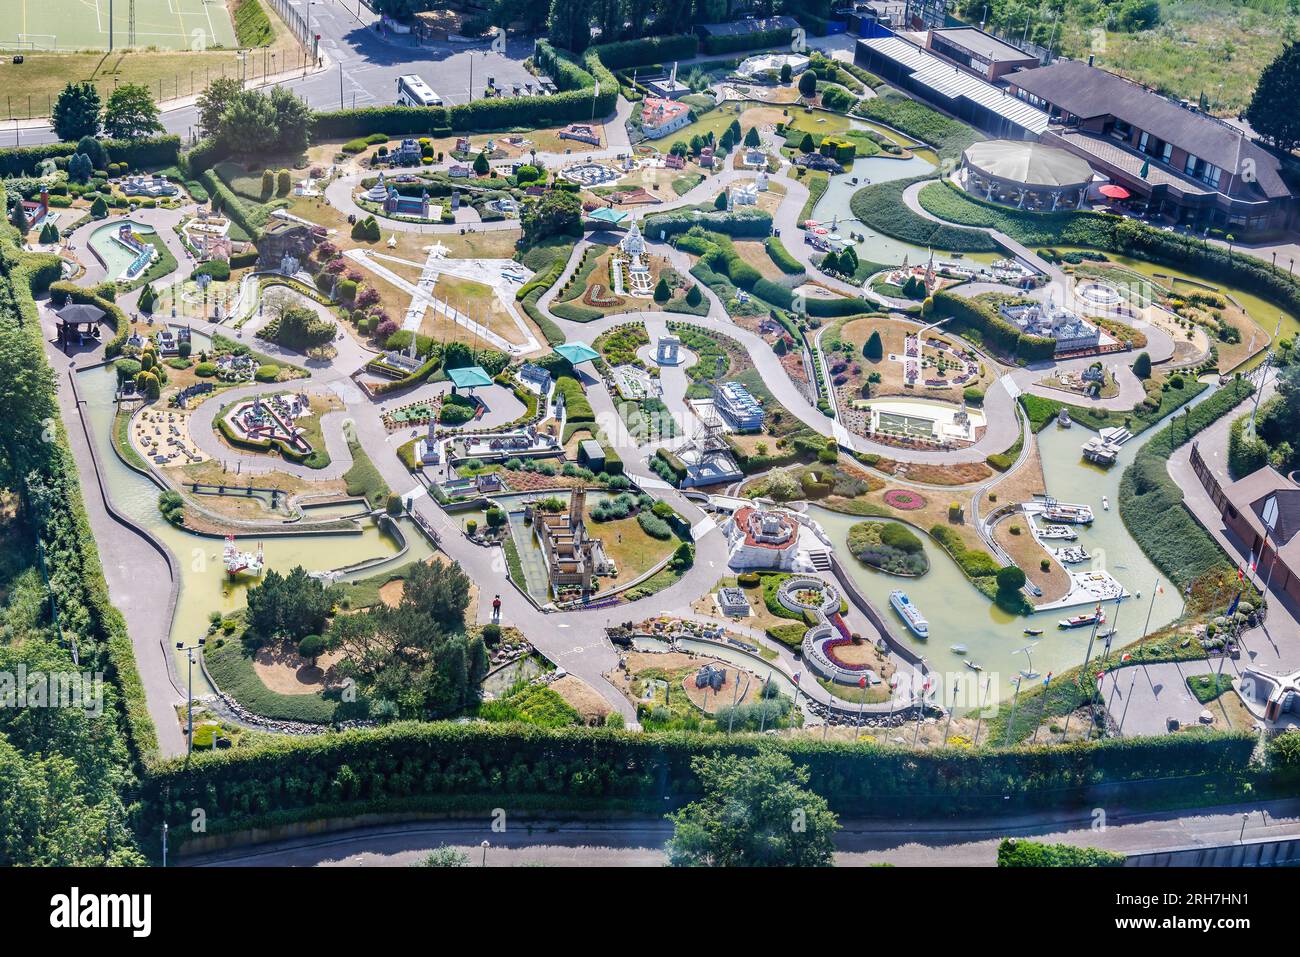 Vue aérienne de Mini Europe, un parc miniature situé dans le parc d'attractions Bruparck, au pied de l'Atomium, à Bruxelles, Belgique, avec reprod Banque D'Images